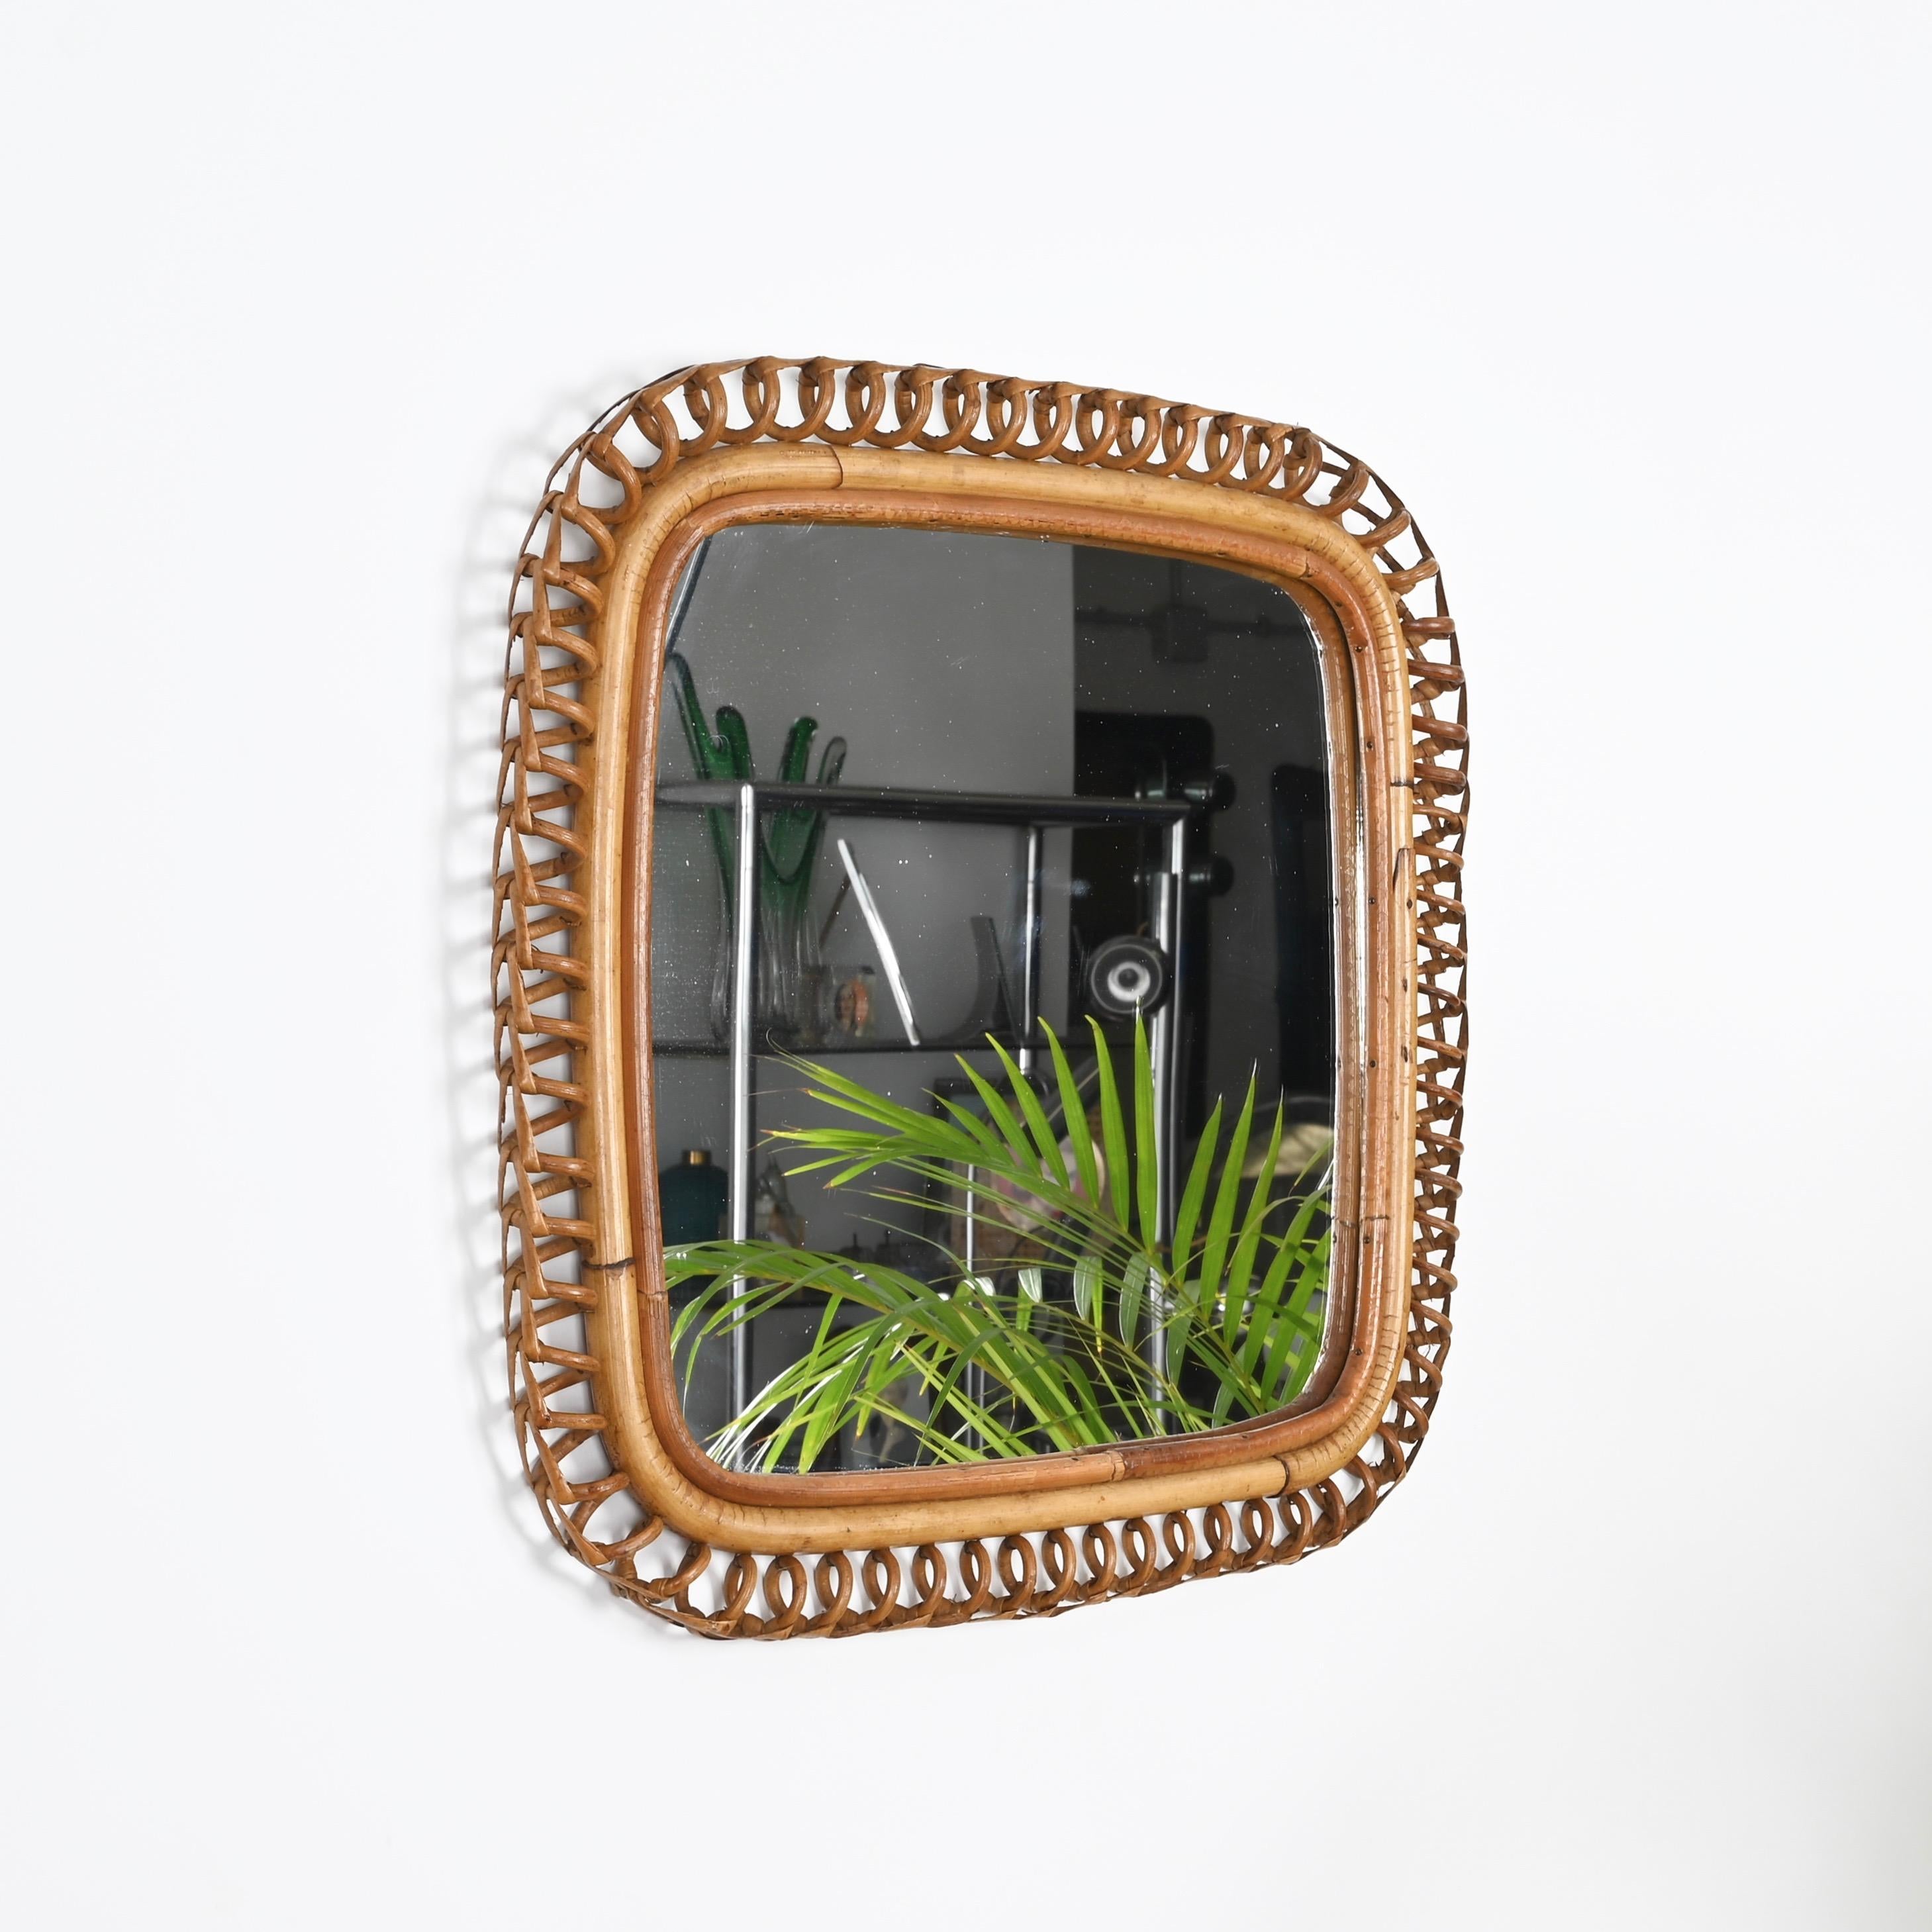 Atemberaubender quadratischer Spiegel im Mid-CenturyFrench Riviera-Stil, komplett aus Bambus, gebogenem Rattan und handgeflochtener Weide. Dieser einzigartige Spiegel wurde in den 1960er Jahren in Italien hergestellt und ist ein Werk des Meisters